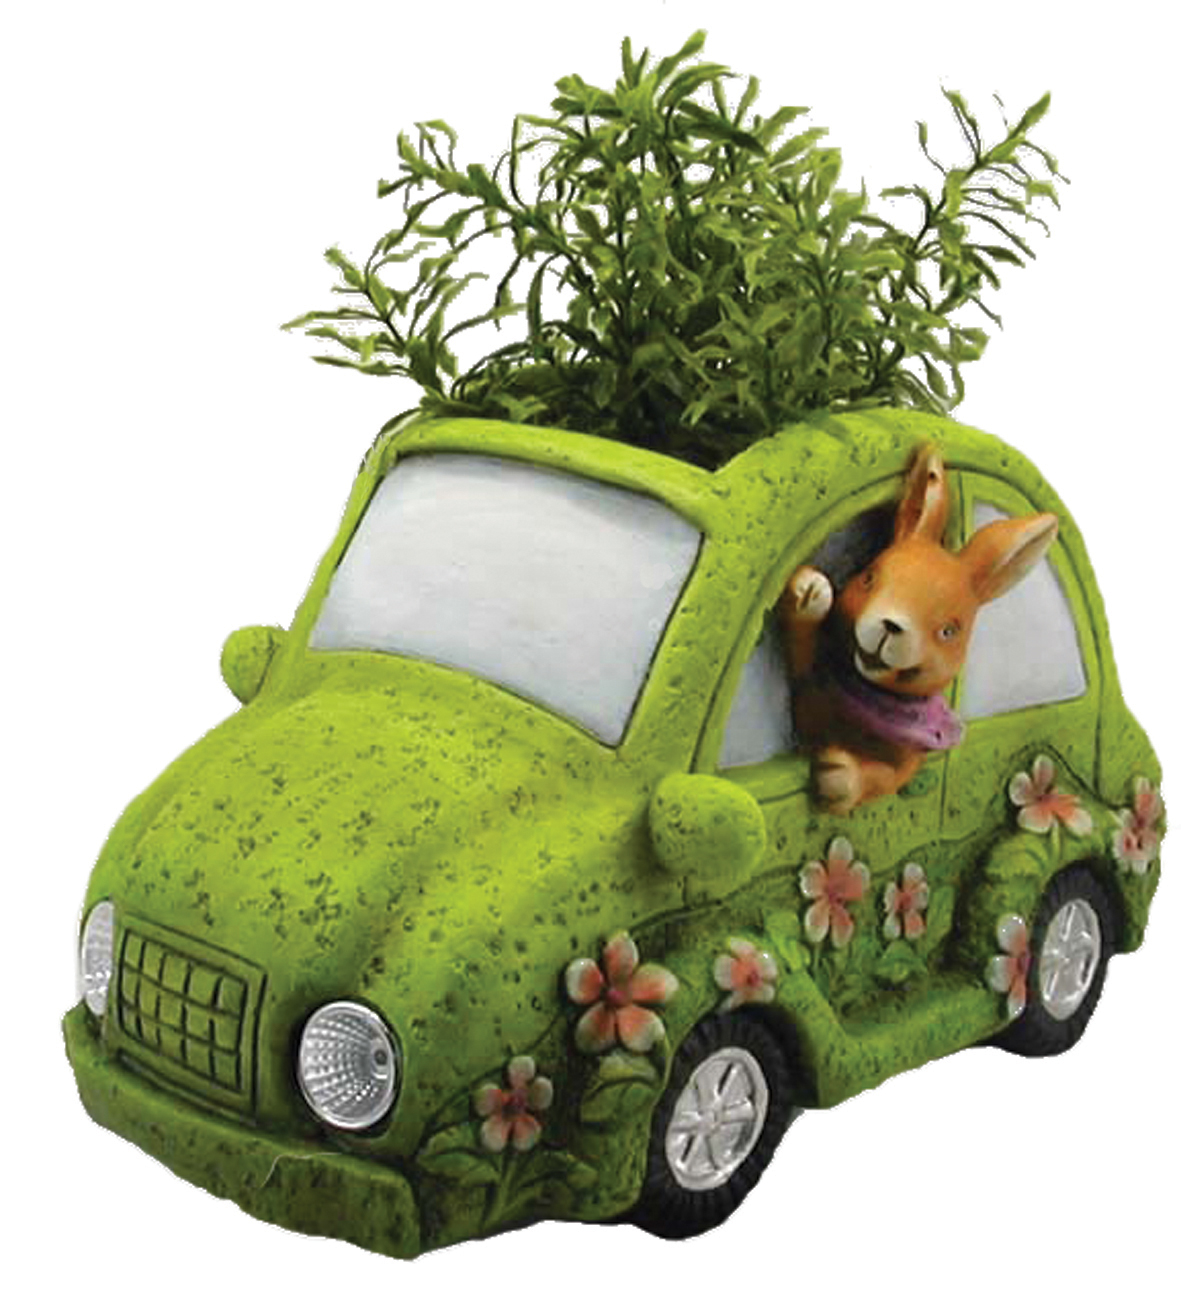 Green Car Planter